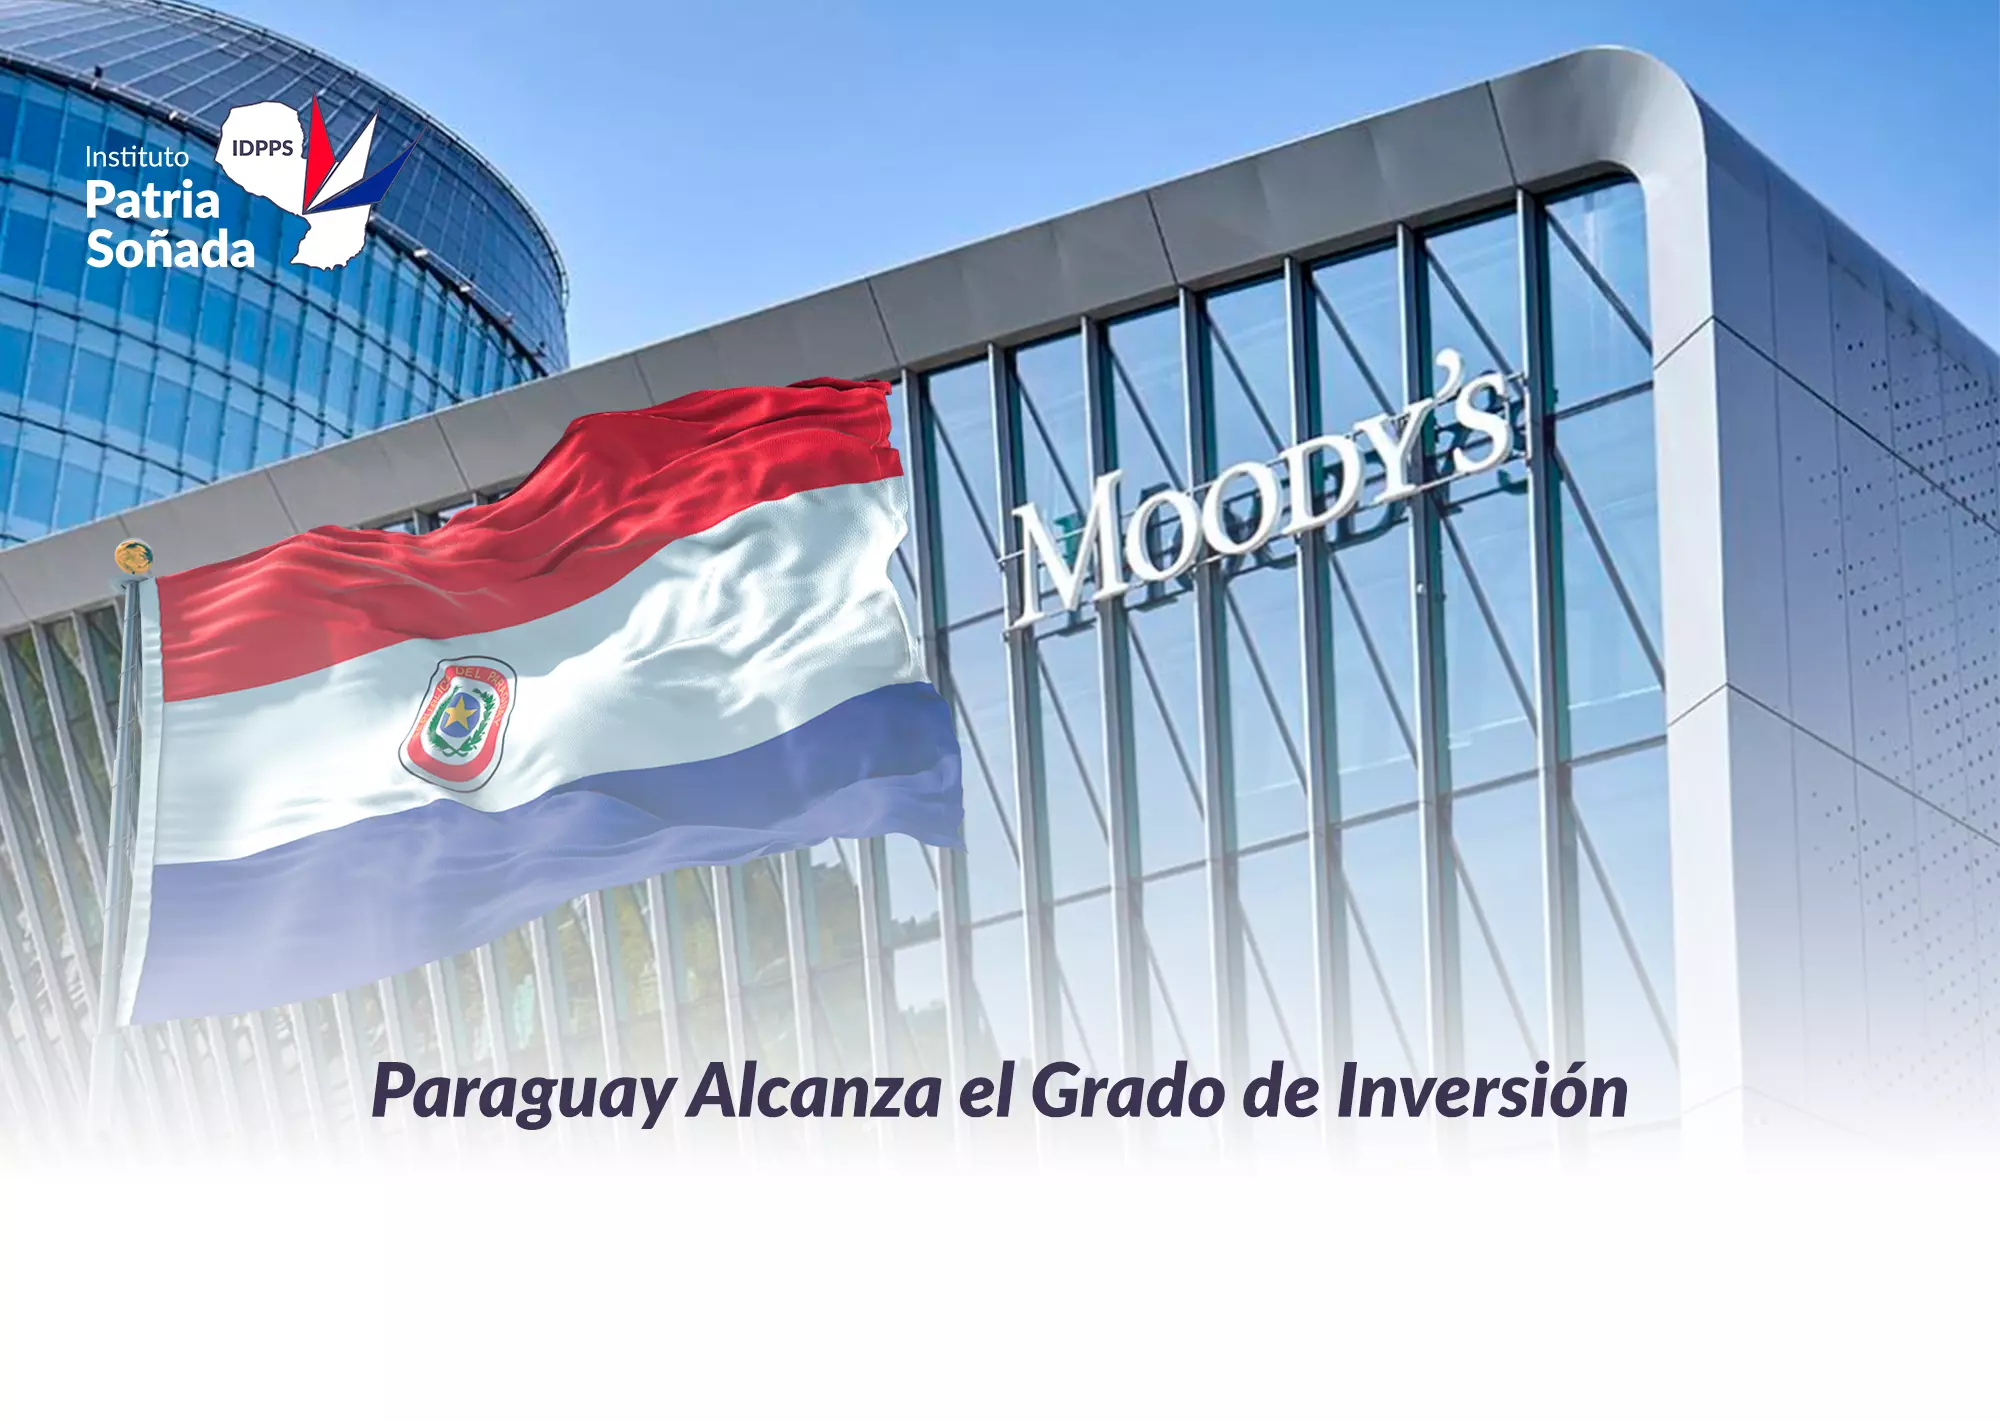 Paraguay Alcanza el Grado de Inversión: Un Logro Histórico